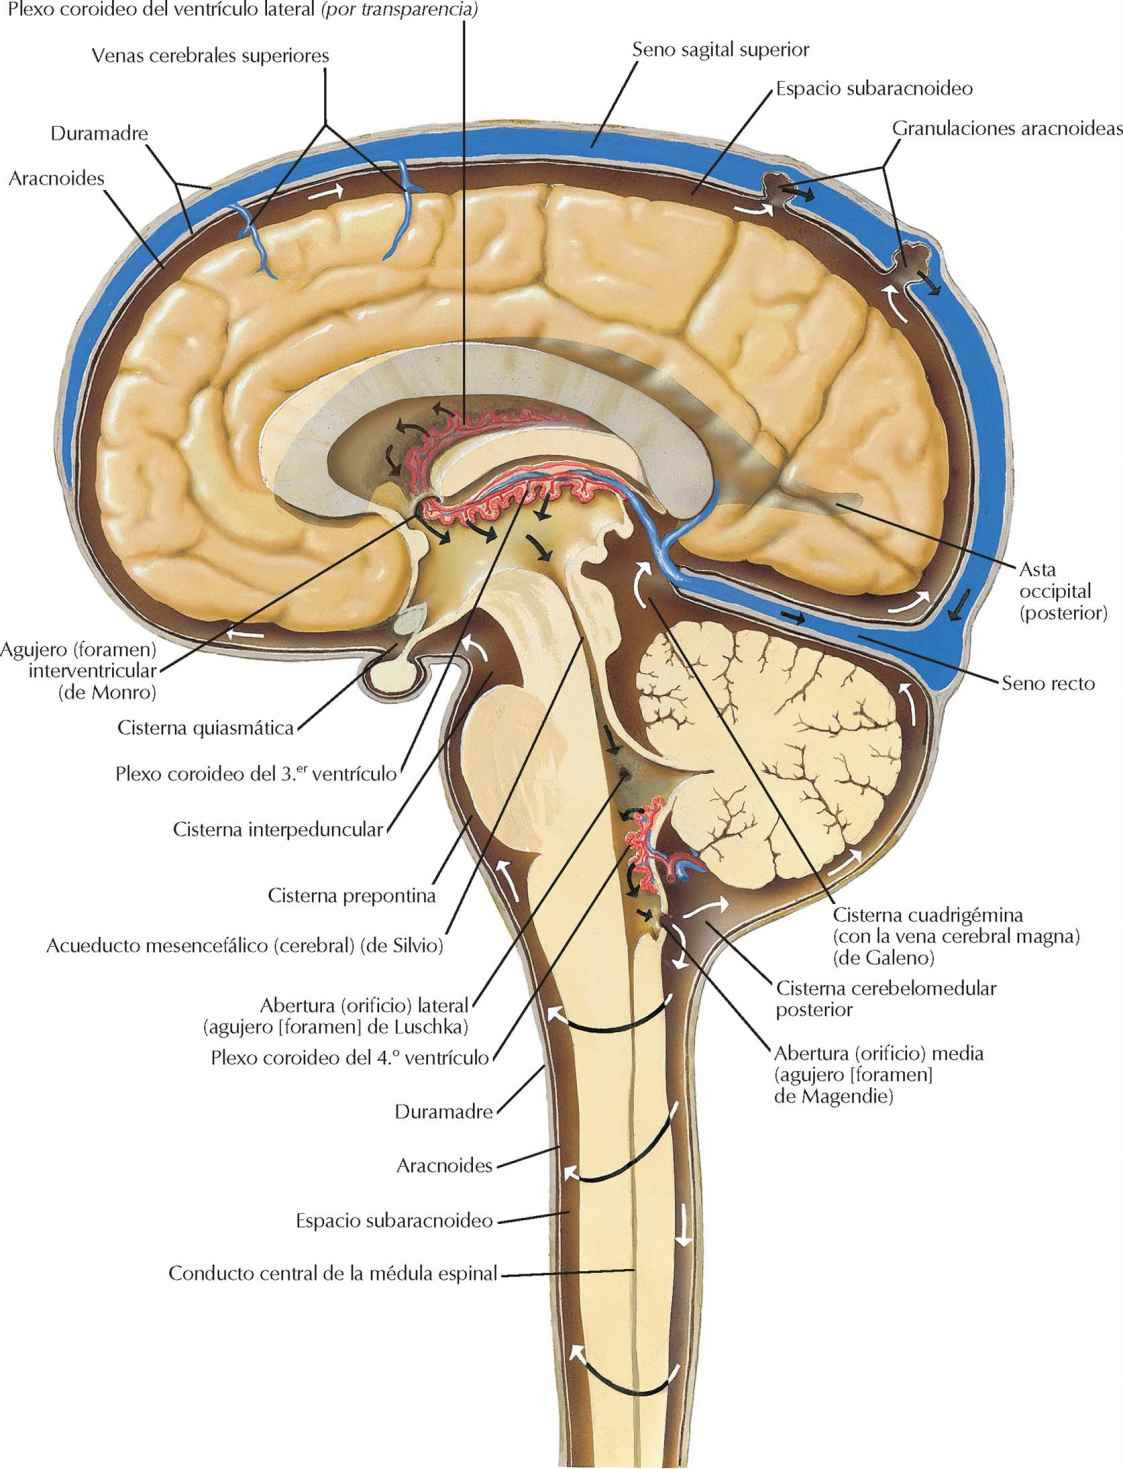 Circulación del líquido cefalorraquídeo
(cerebroespinal).